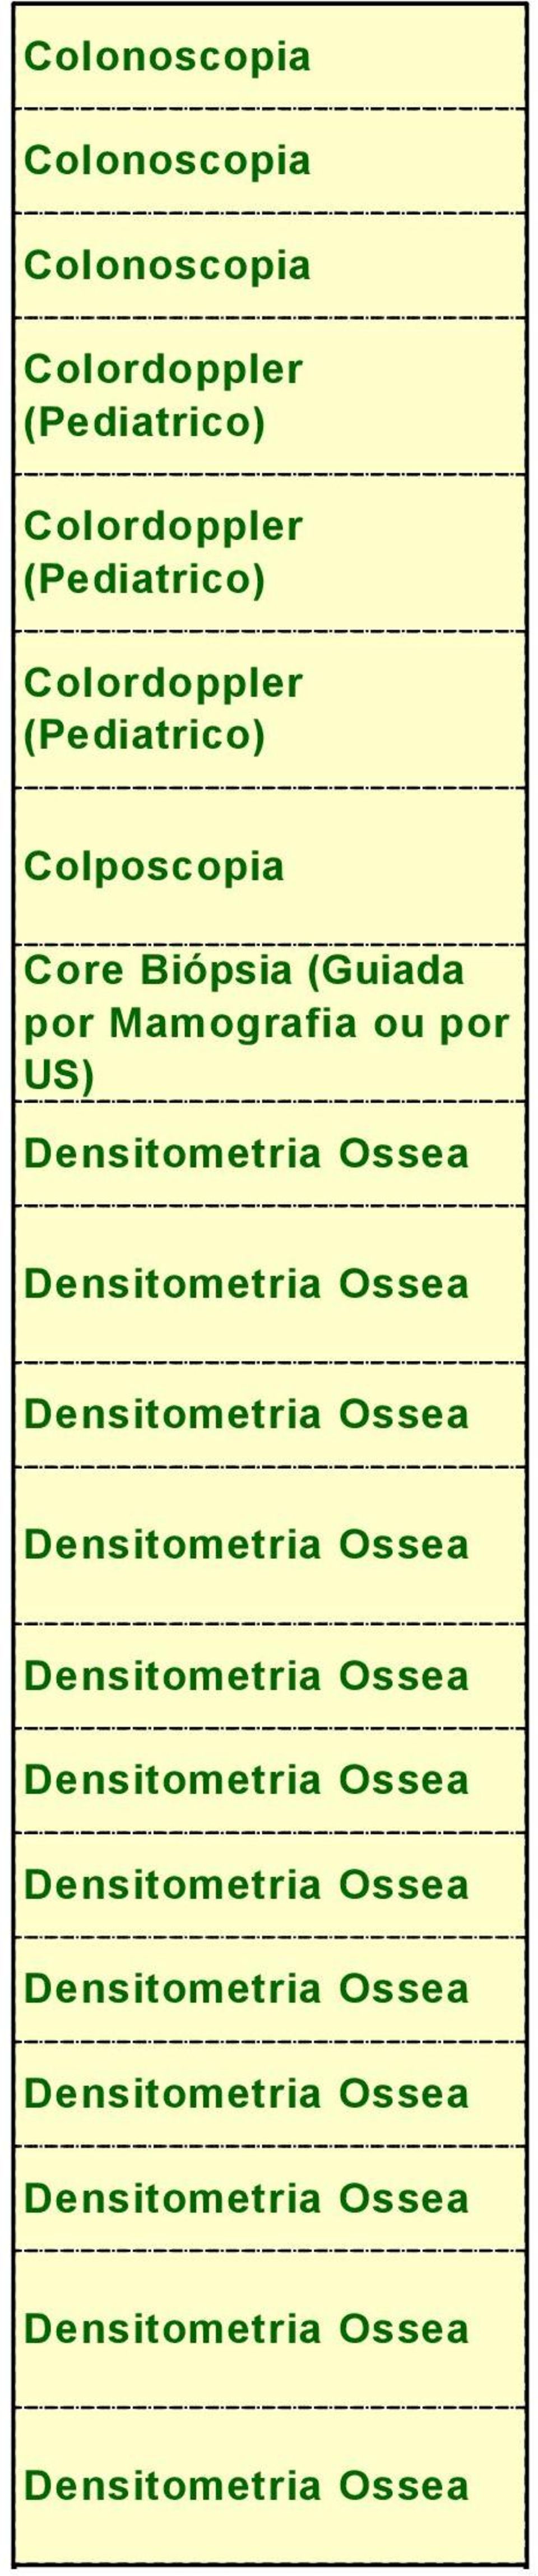 Densitometria Ossea Densitometria Ossea Densitometria Ossea Densitometria Ossea Densitometria Ossea